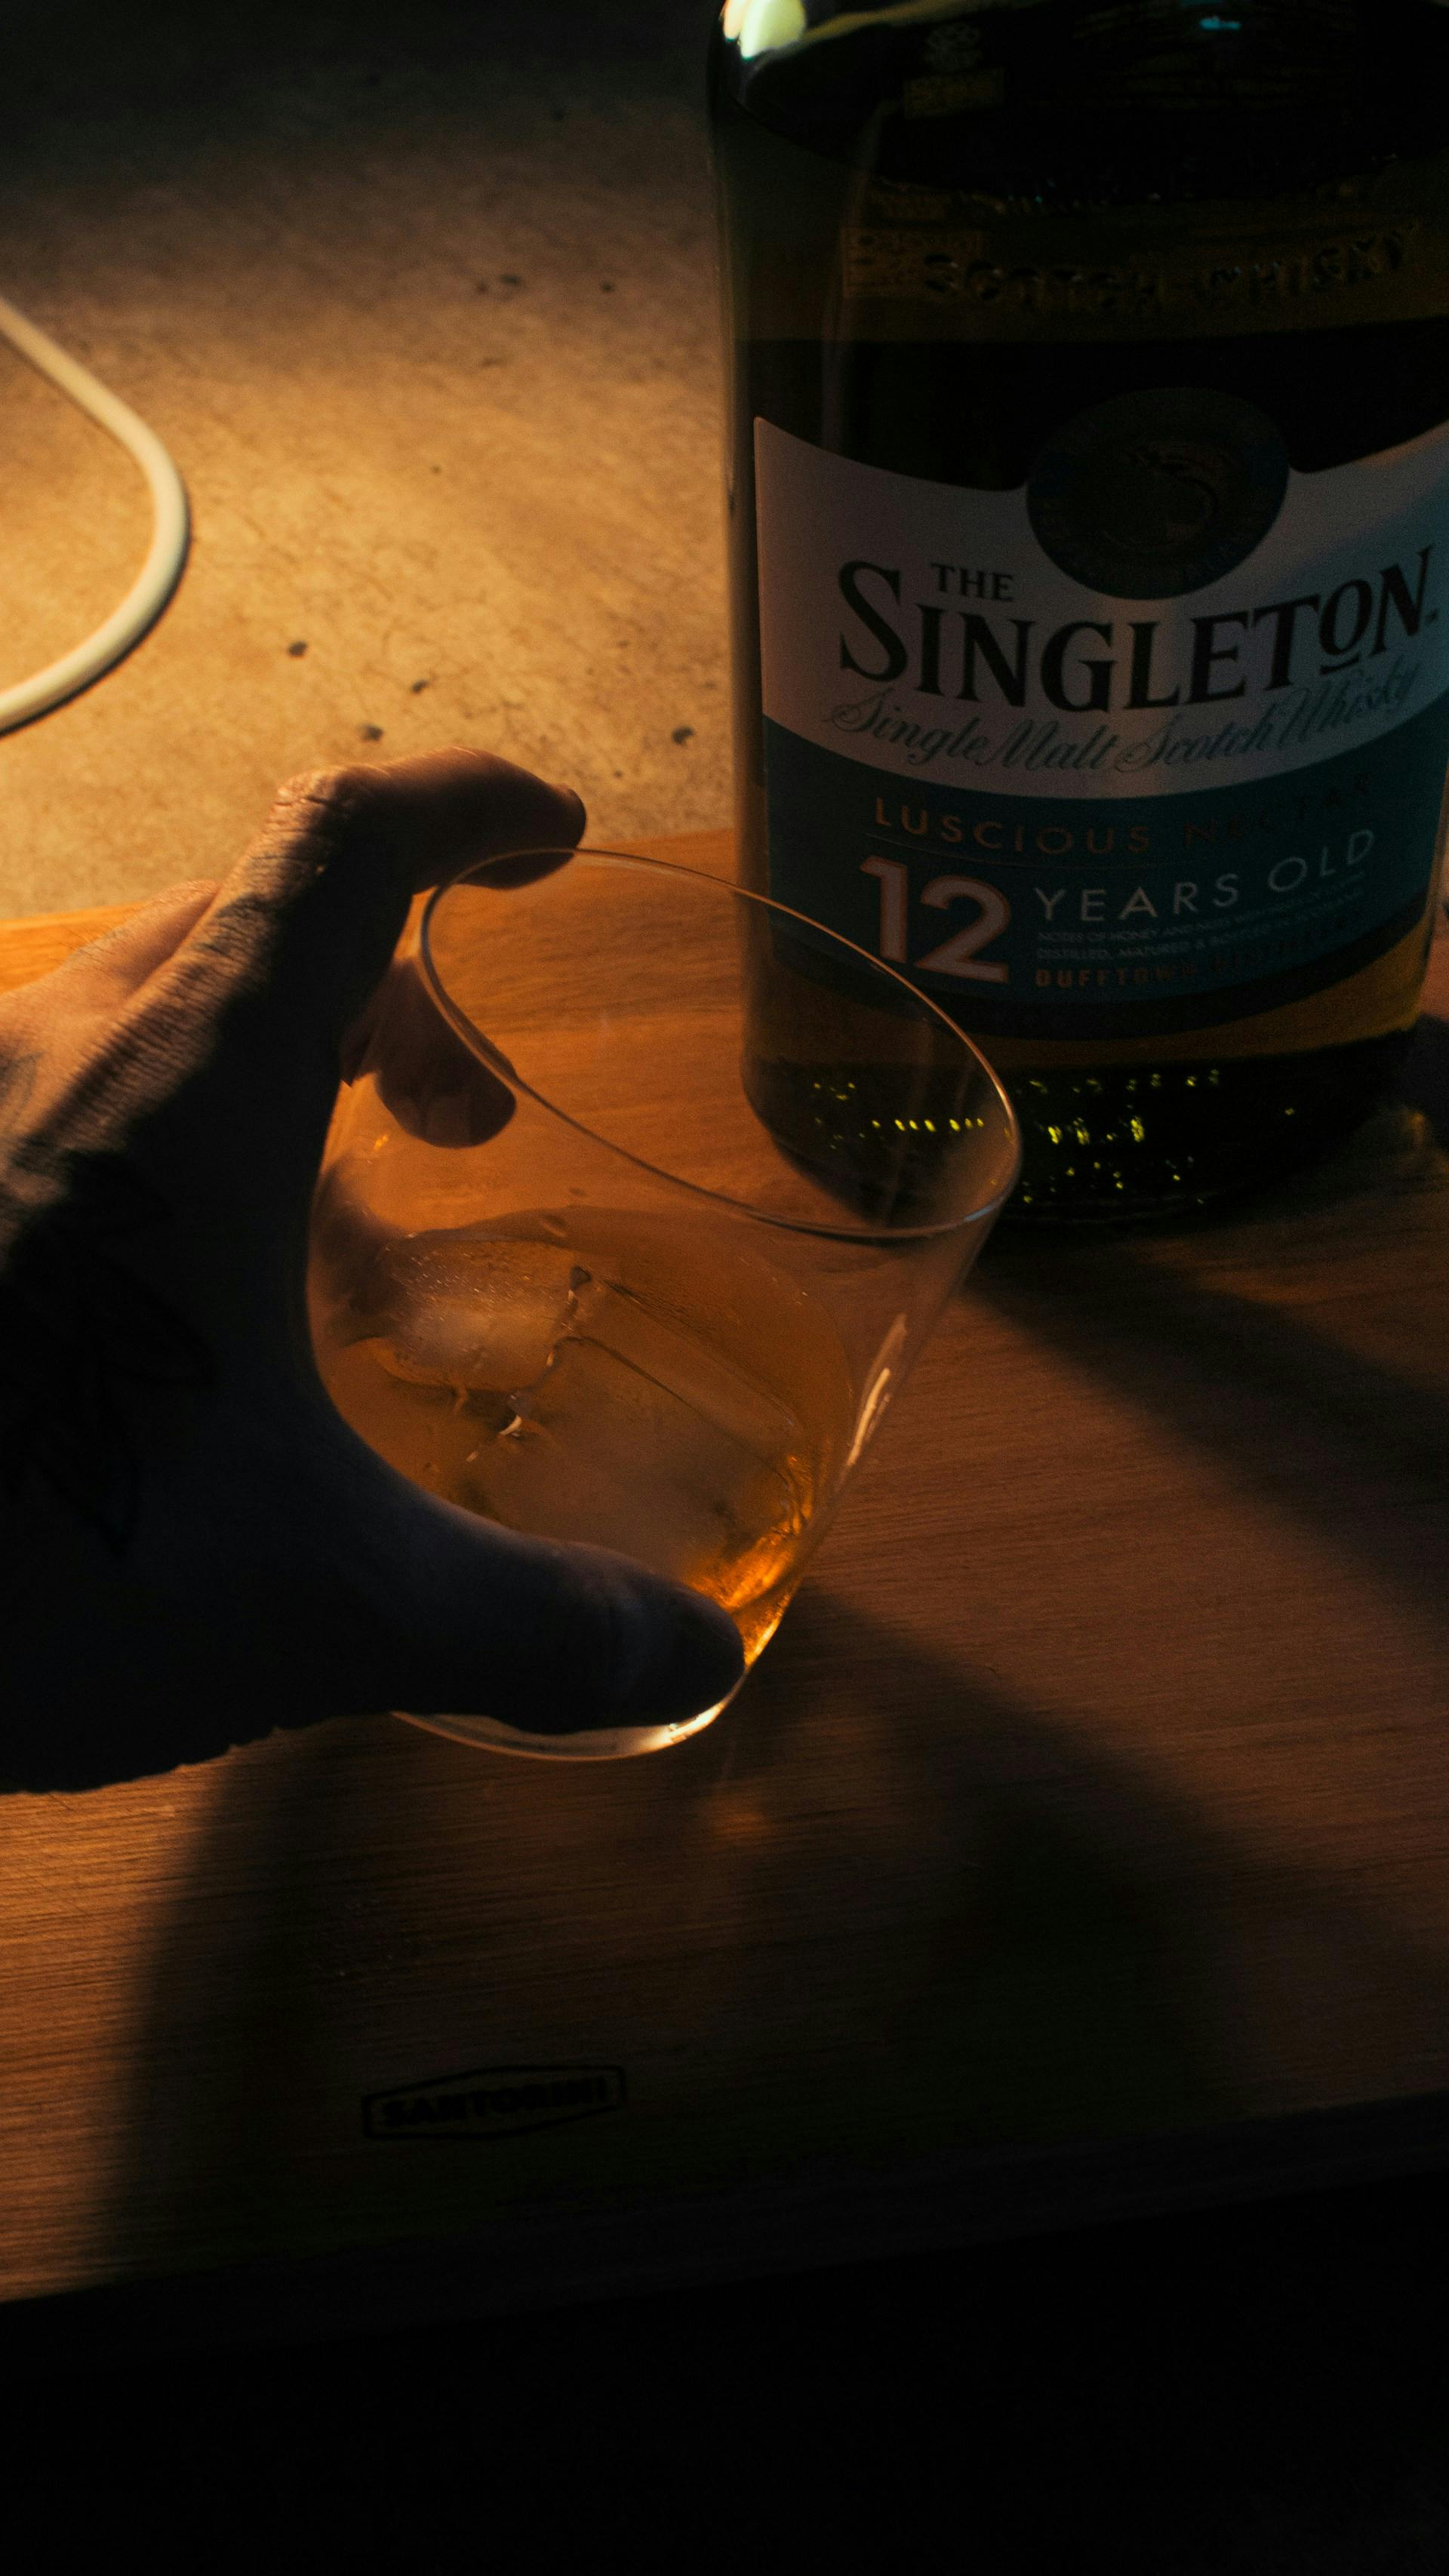 Flasche auf Holztisch mit Glas in einer Hand wo braune Flüssigkeit drinnen ist